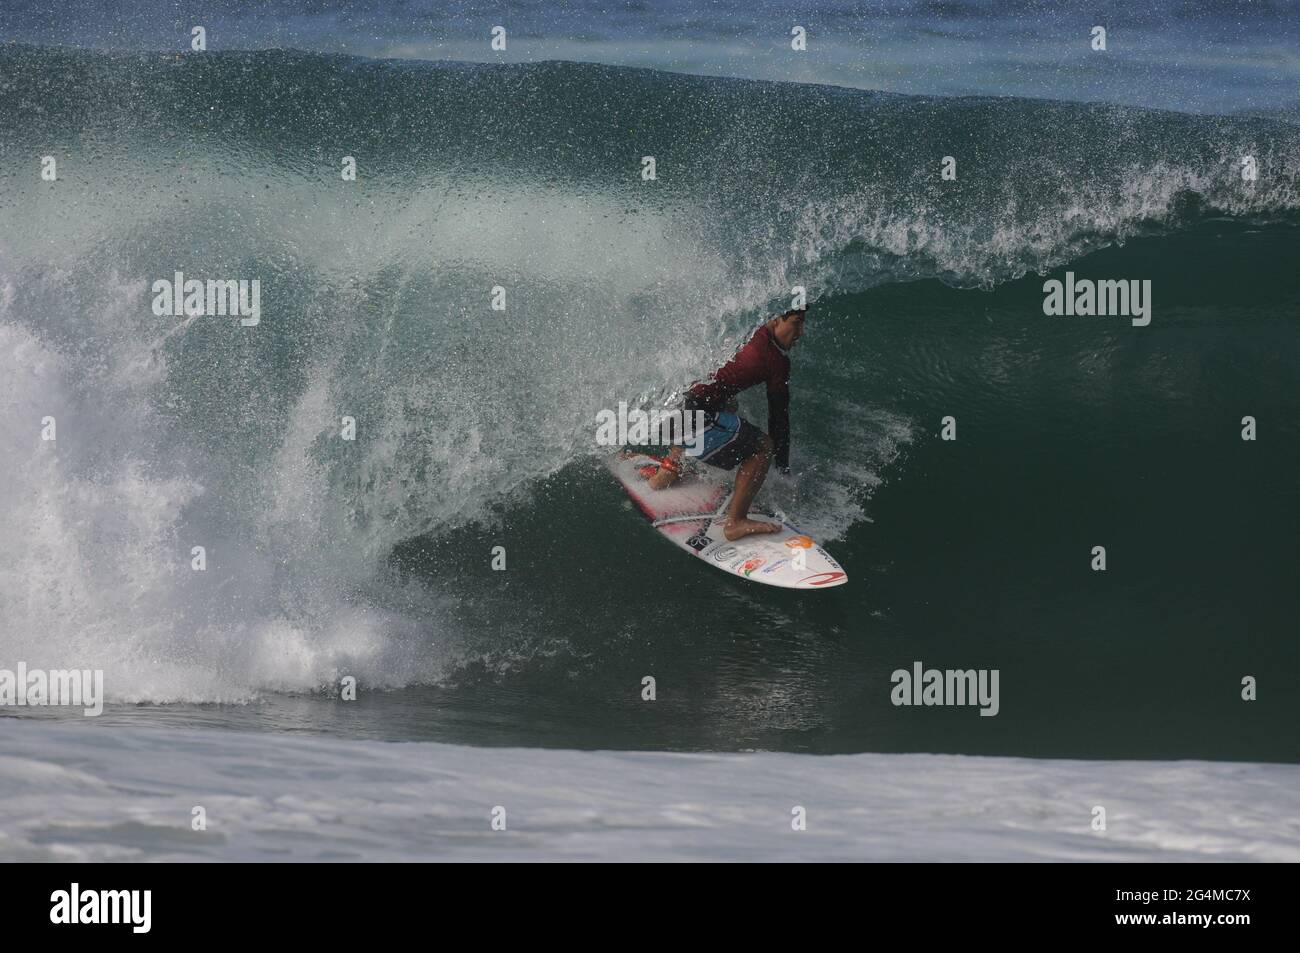 Rio de Janeiro-Brésil 10 avril 2019, le surfeur brésilien Gabriel Medina, formation aux Jeux Olympiques de Tokyo 2021 Banque D'Images